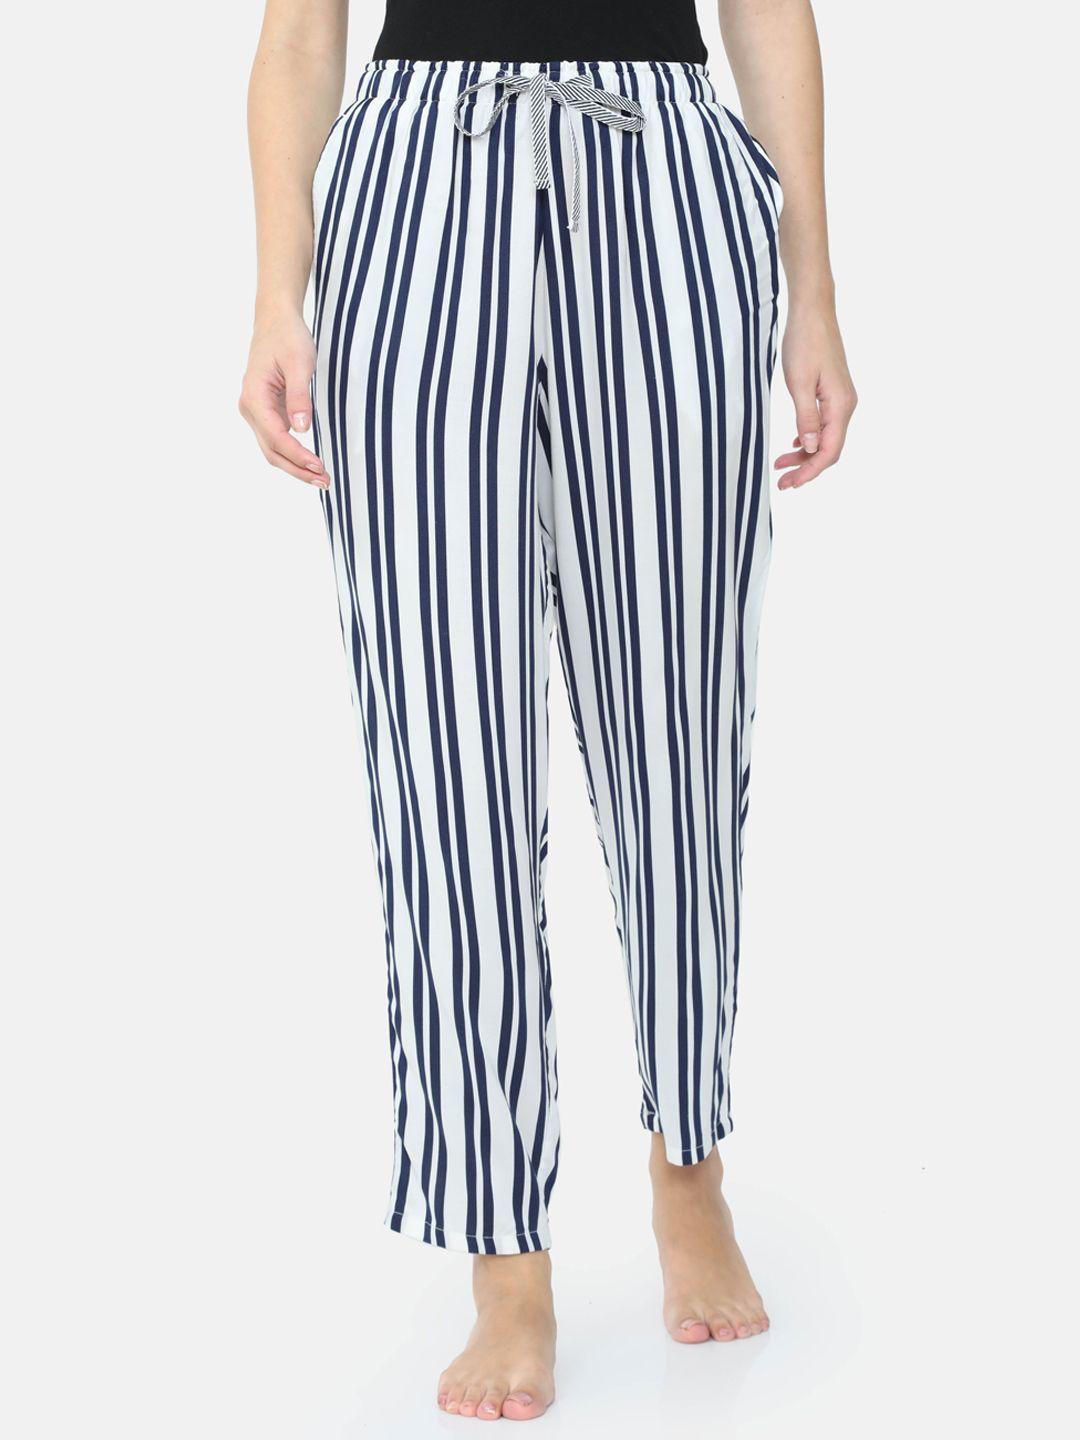 bareblow women white & navy blue striped lounge pants